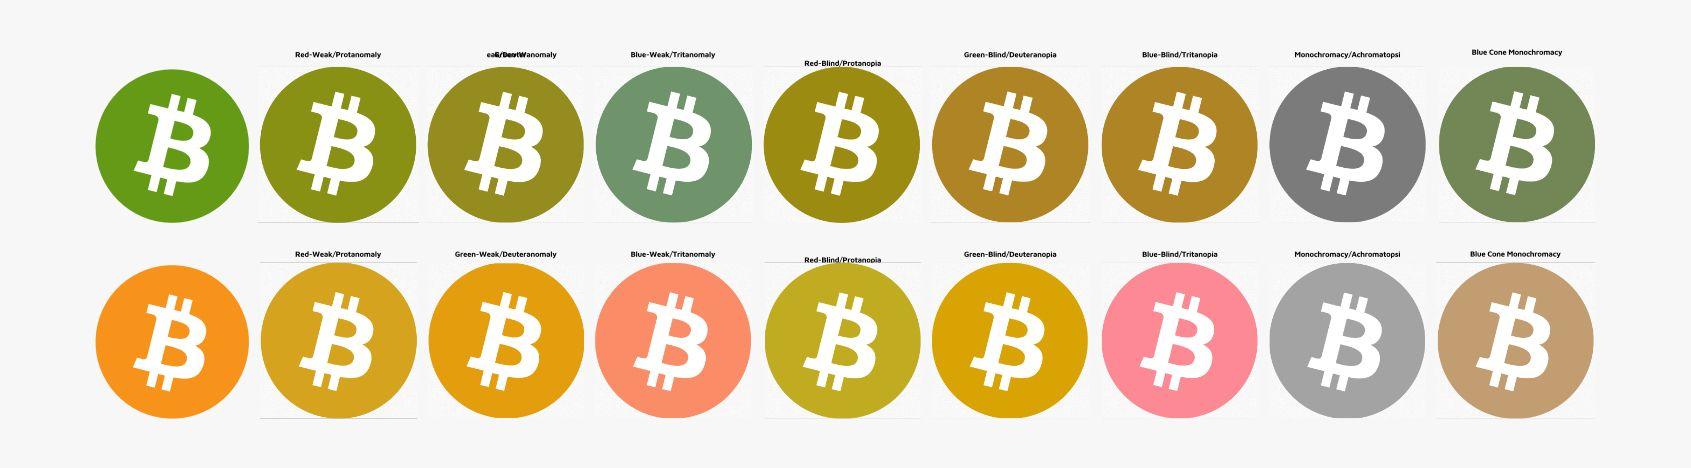 Bitcoin Cash Logo - bitcoin cash logo & branding - The Bitcoin Forum